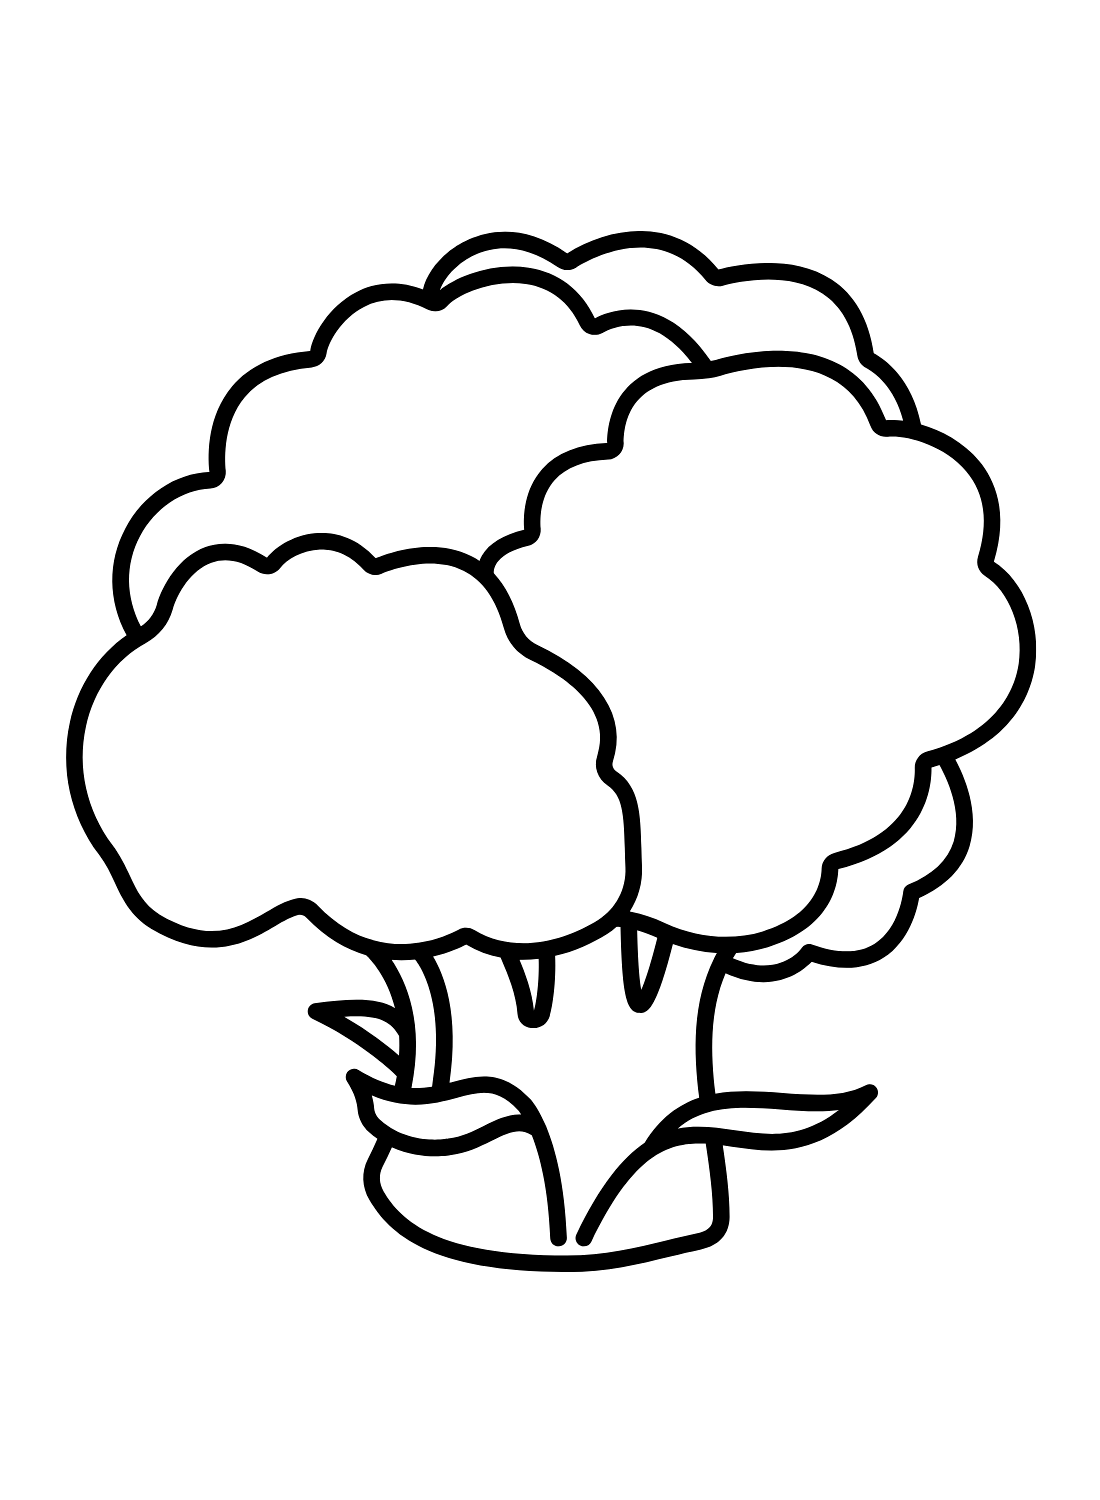 Broccoli Immagini da Broccoli